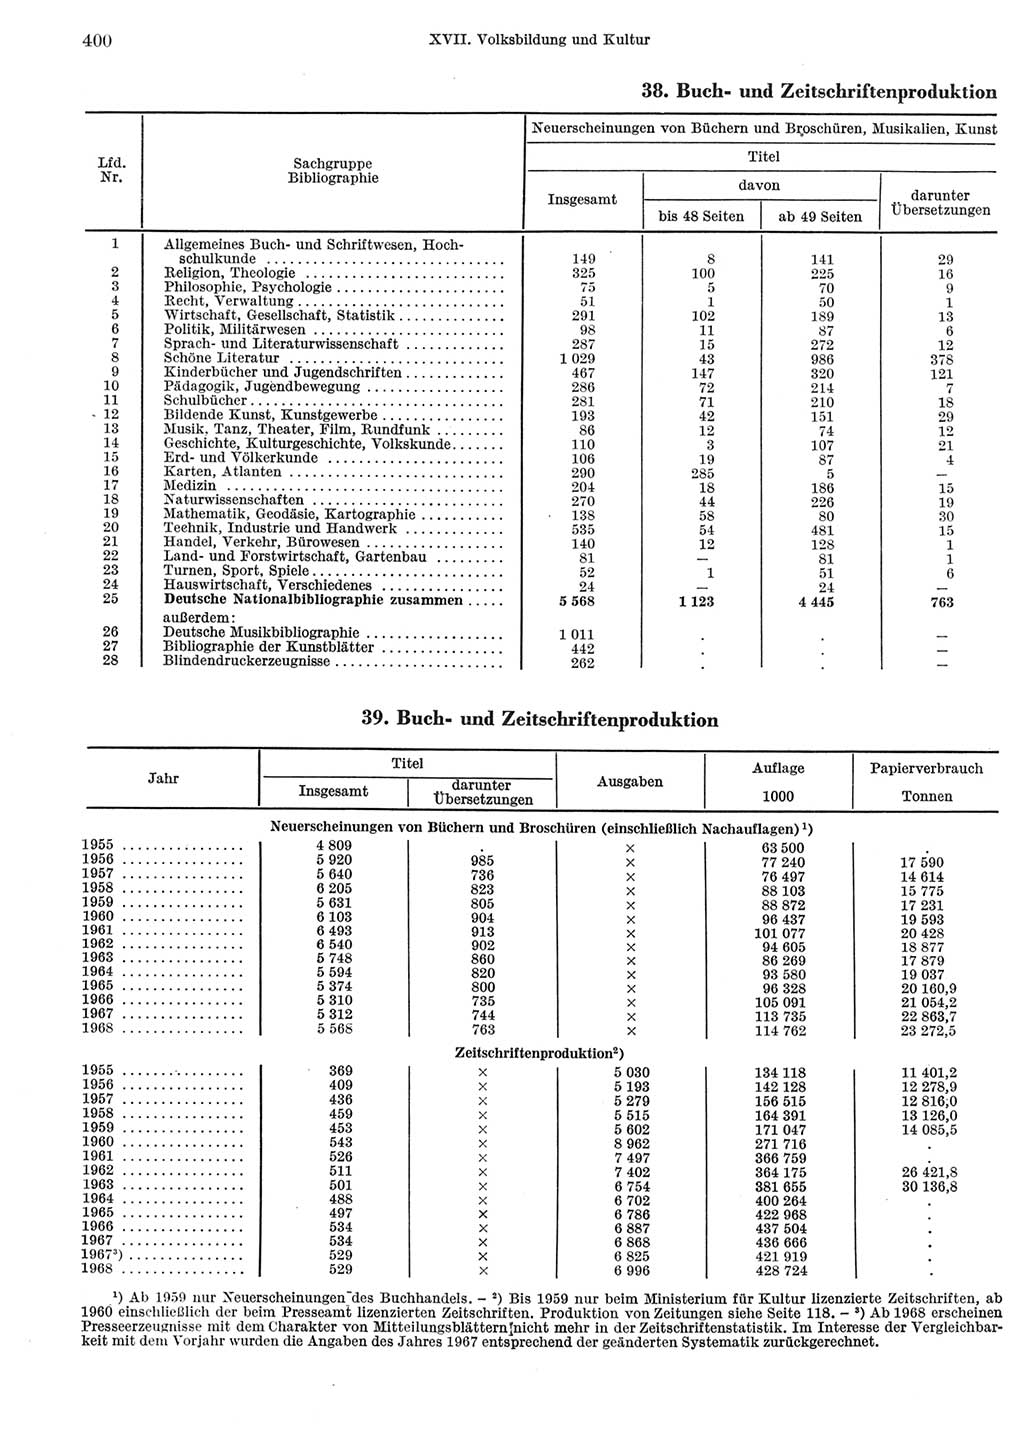 Statistisches Jahrbuch der Deutschen Demokratischen Republik (DDR) 1969, Seite 400 (Stat. Jb. DDR 1969, S. 400)